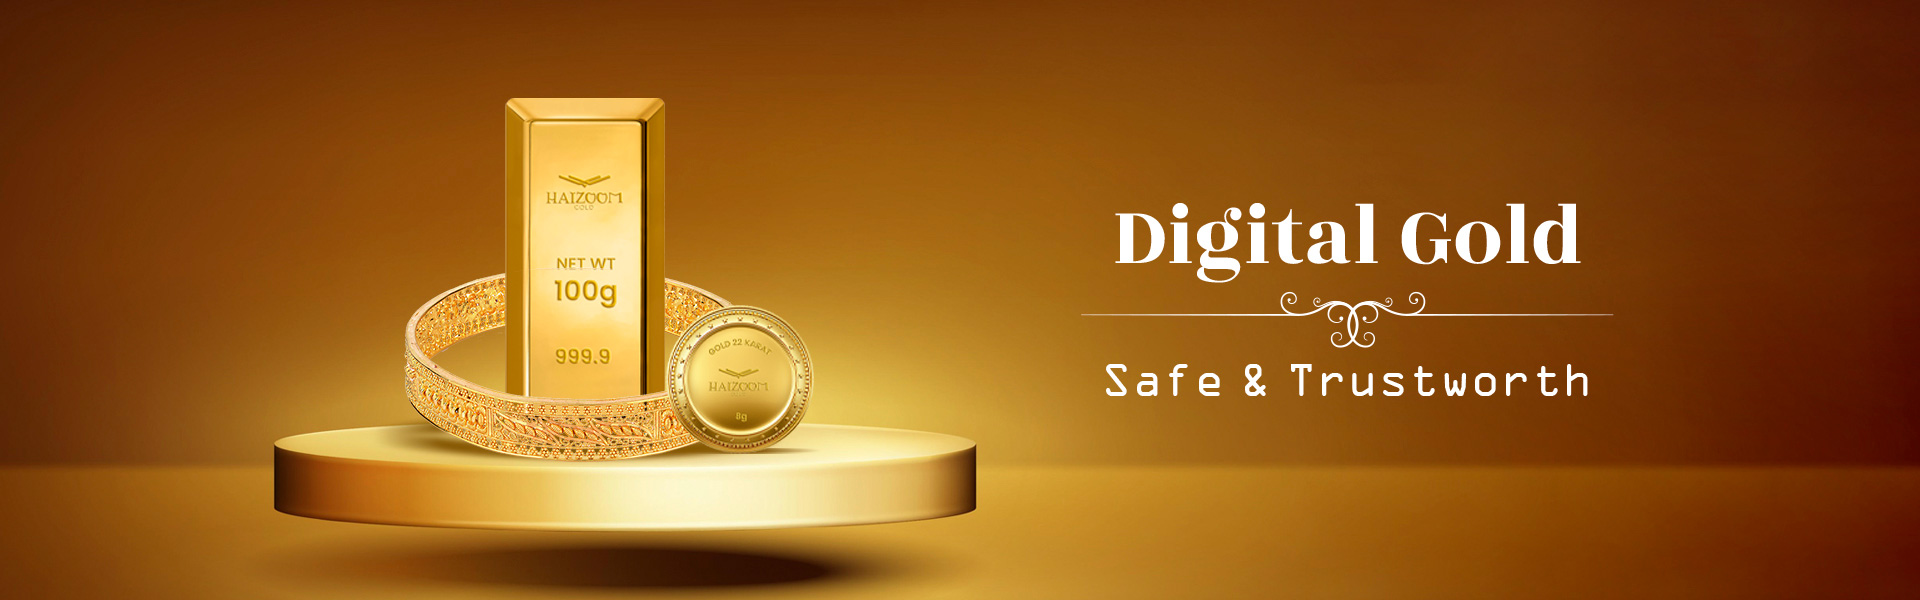 digital-gold-banner